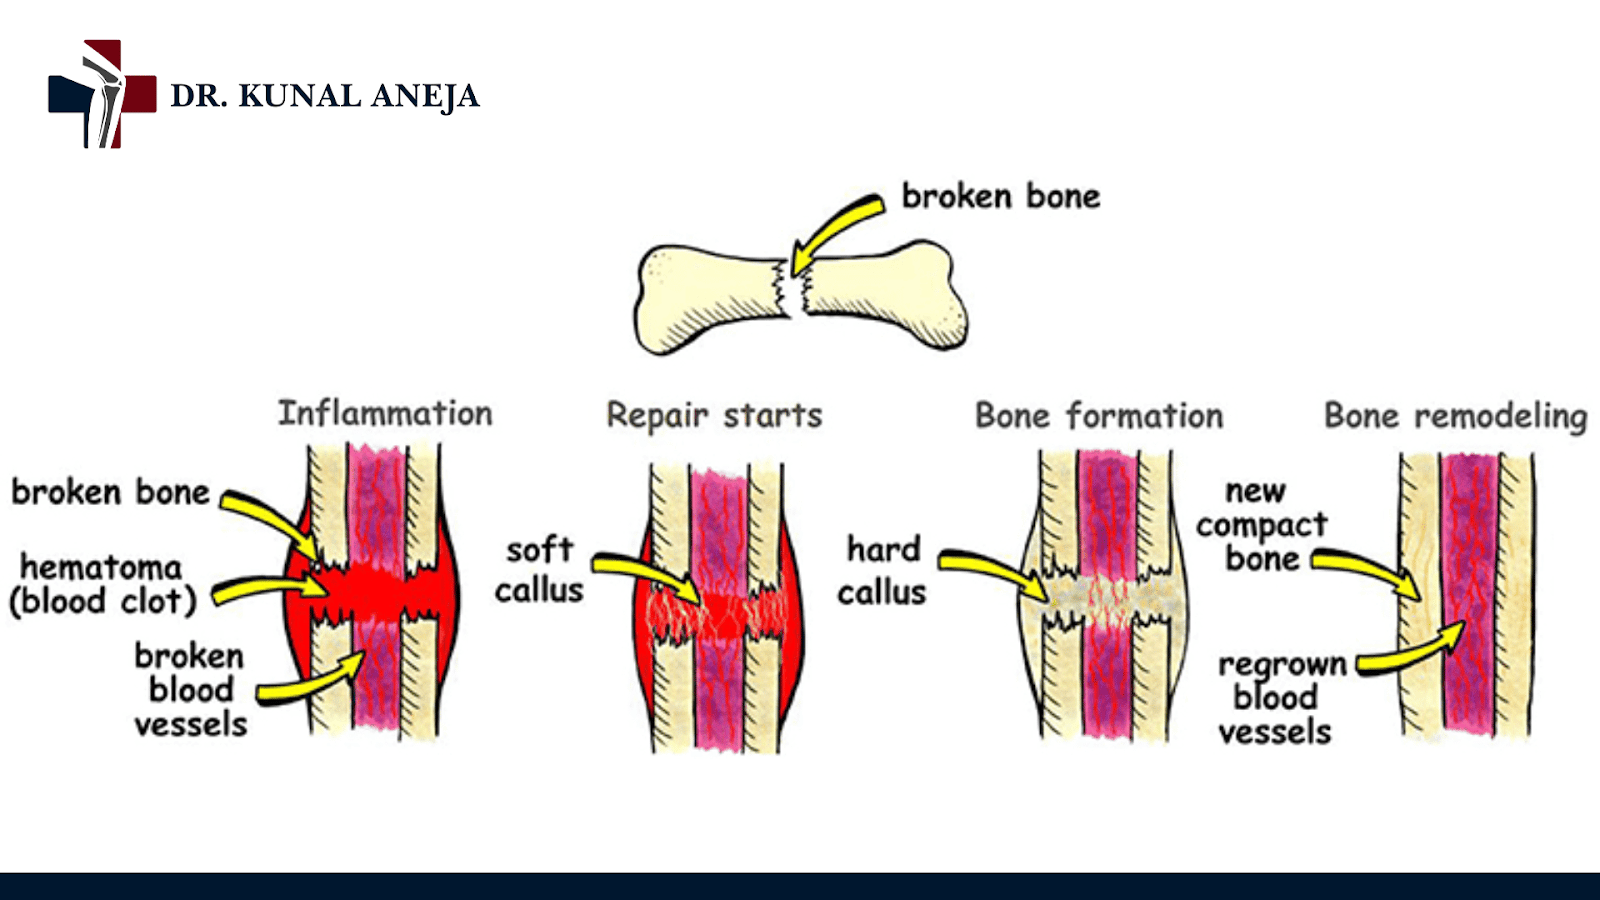 Bone Fracture Treatment in Delhi